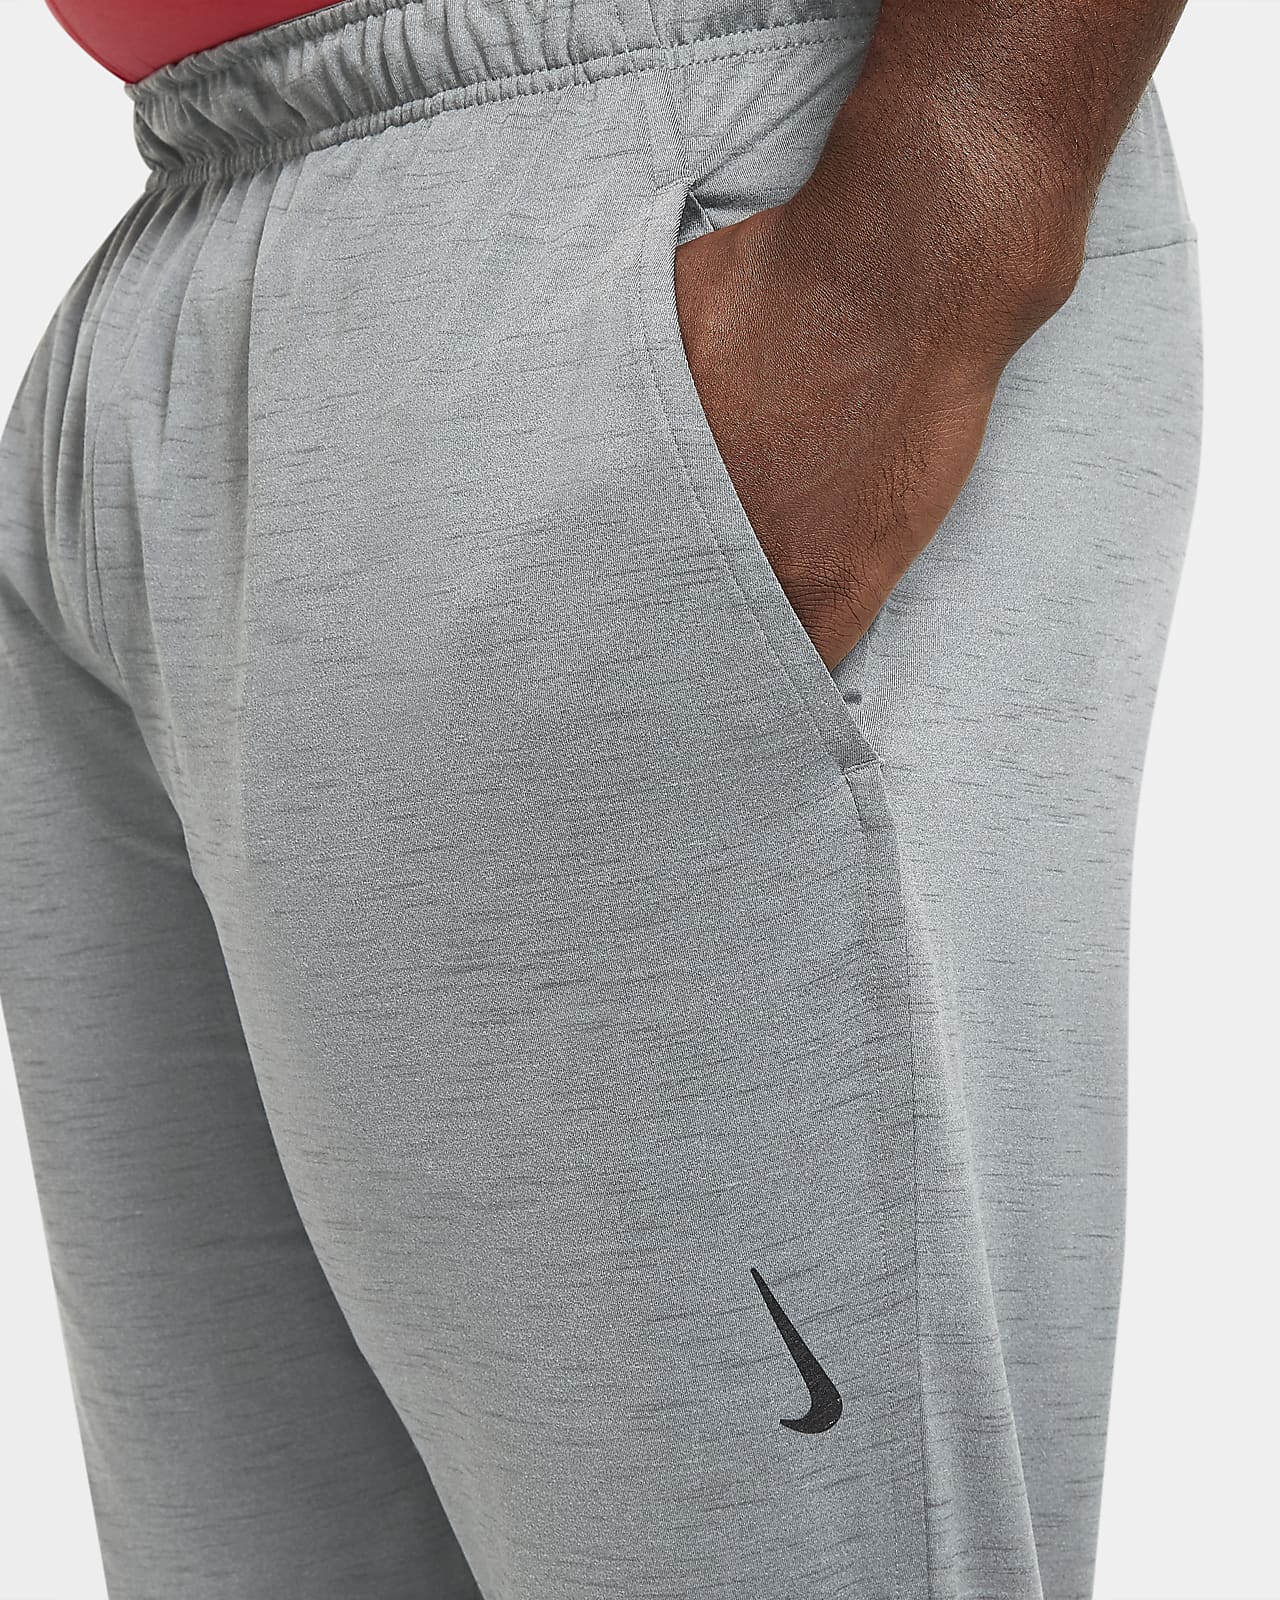 Gray Mens Nike Yoga Dri Fit T-Shirt Training Sz XL DM7825-077 Retail:  $53.00